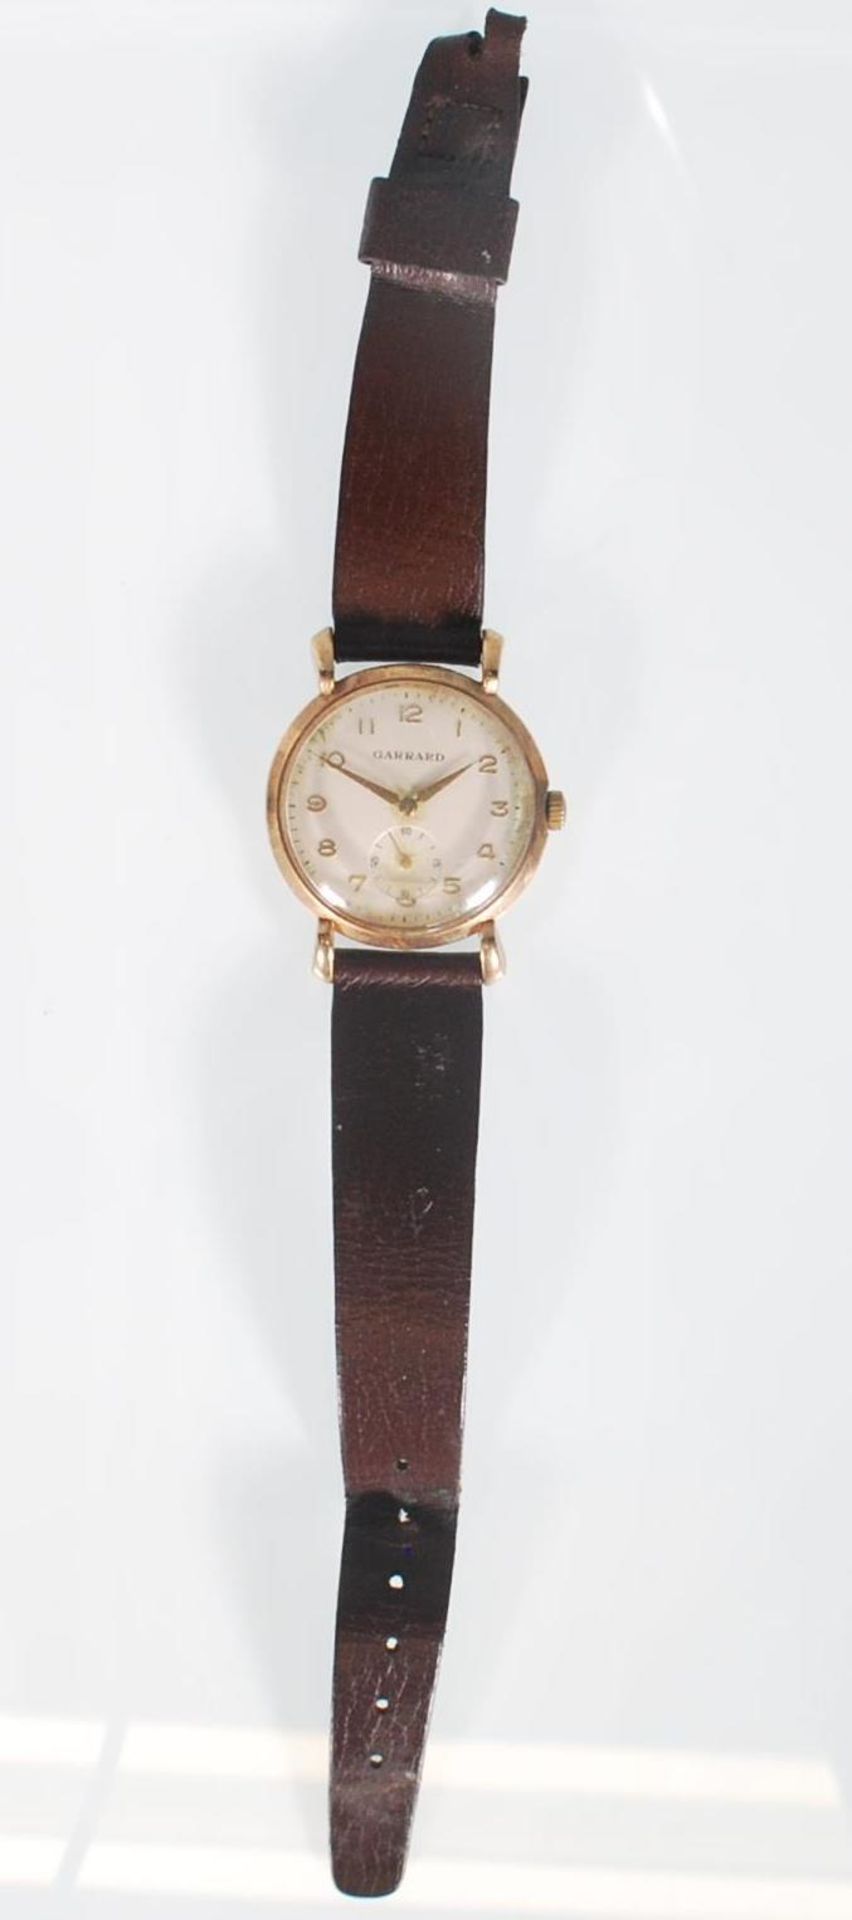 A vintage Garrard 9ct gold gentleman's wrist watch